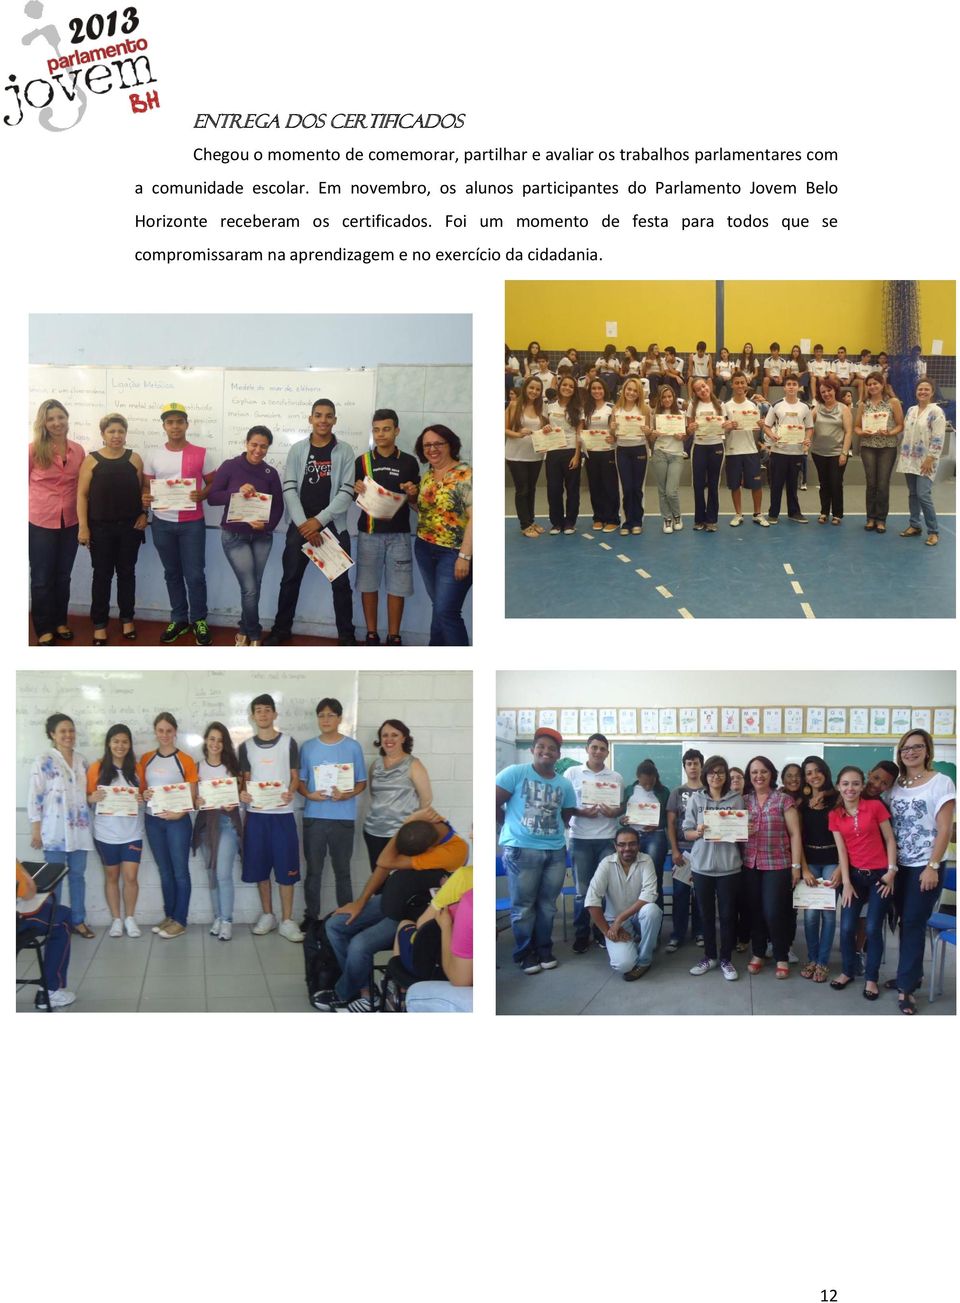 Em novembro, os alunos participantes do Parlamento Jovem Belo Horizonte receberam